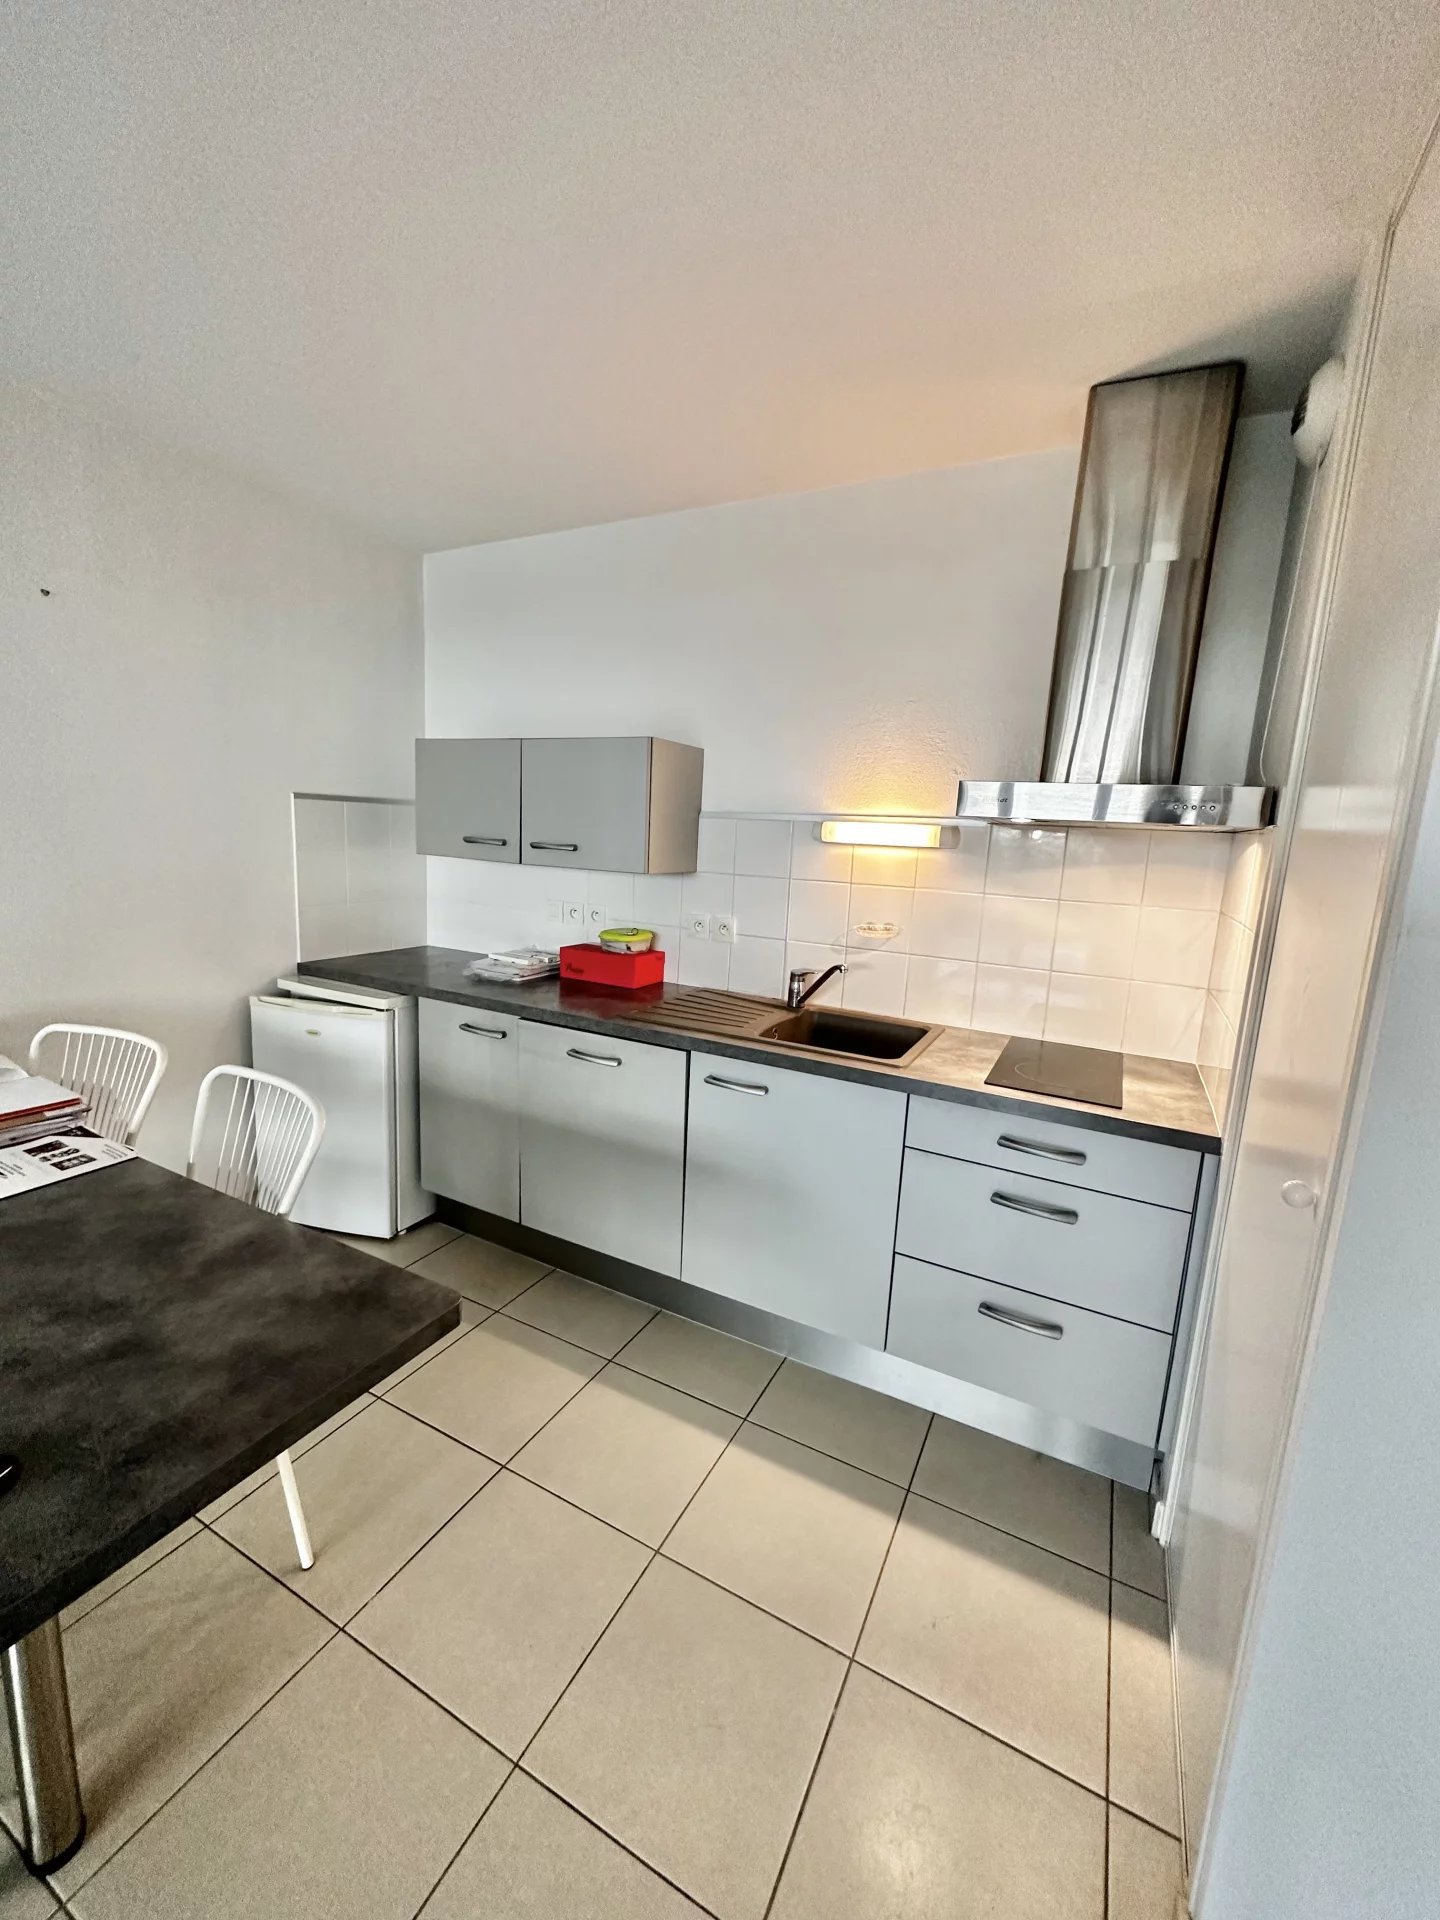 Sale Apartment - Perpignan Saint-Assiscle